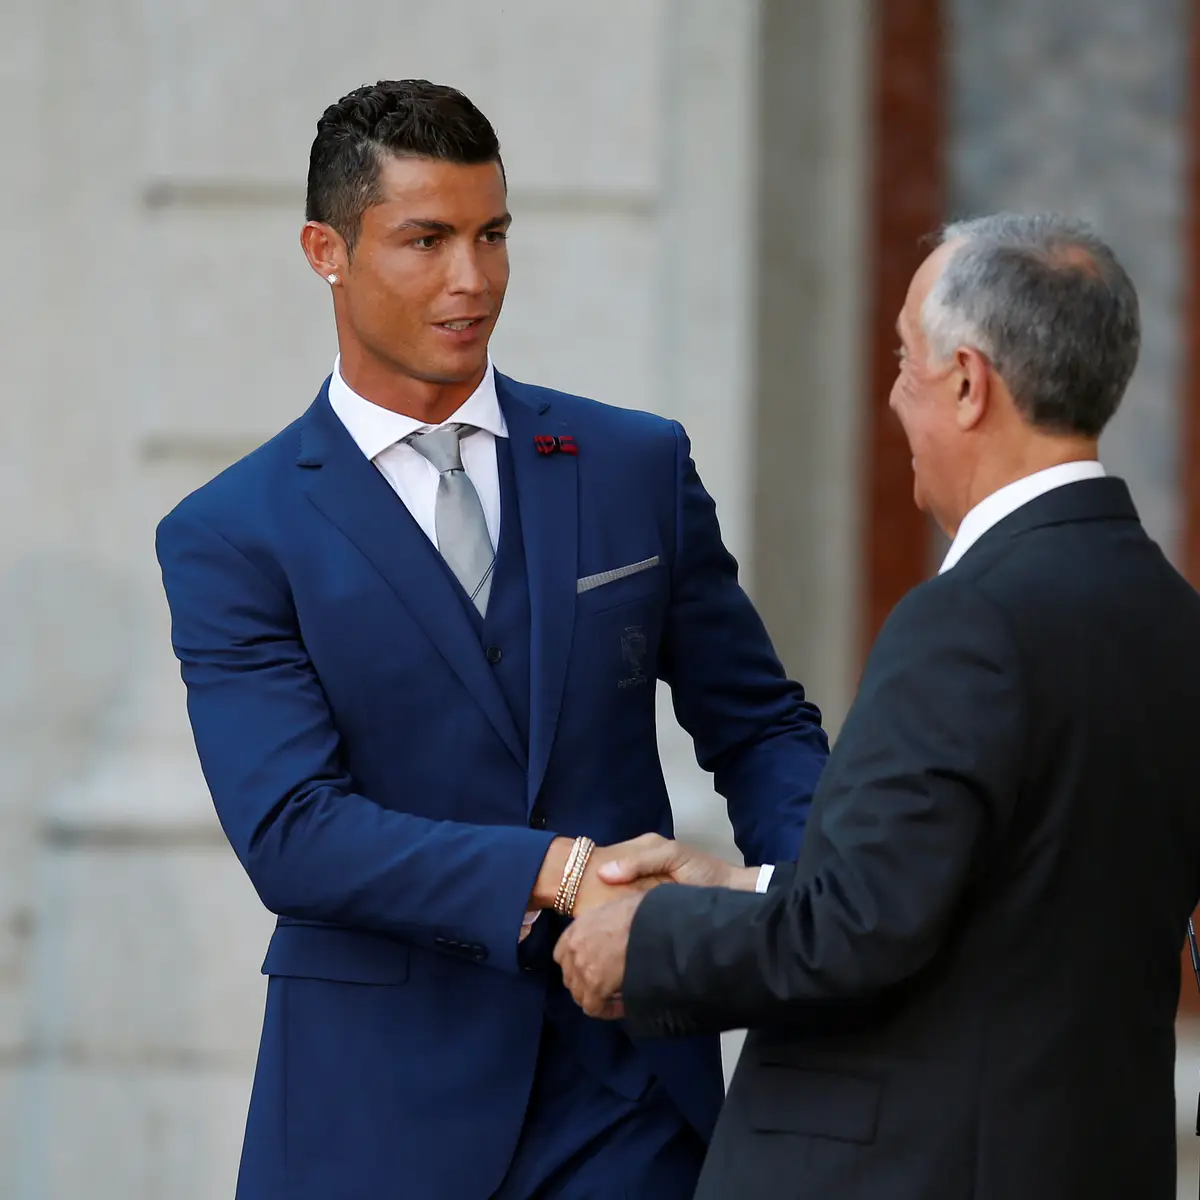 Cristiano Ronaldo ri-se da Bola de Ouro entregue a um jogador reformado